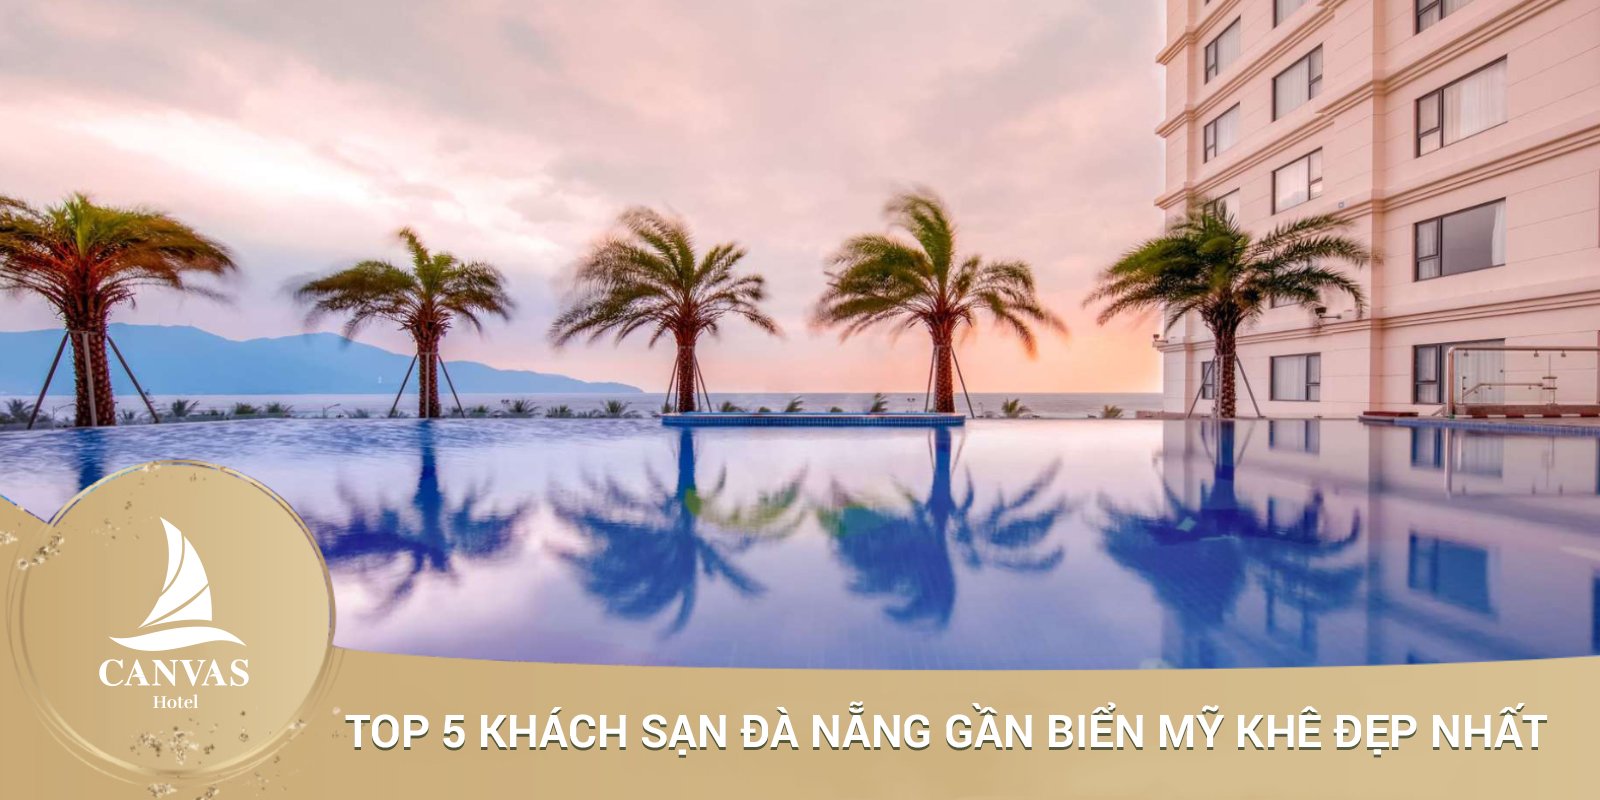 Top 5 khách sạn đà nẵng 4 sao cạnh biển Mỹ Khê được đánh giá tốt nhất